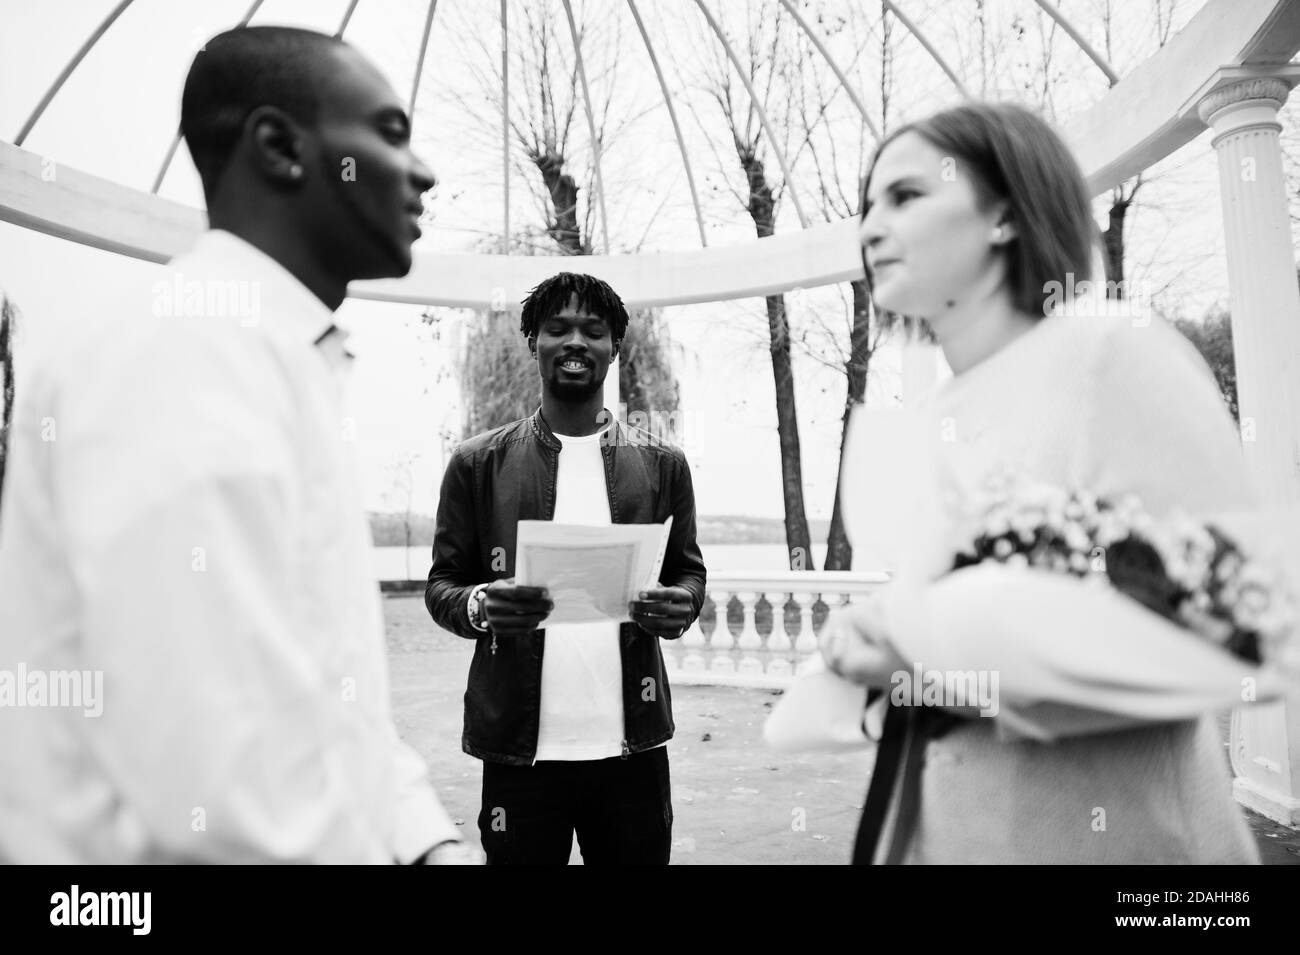 Hochzeit Verlobungszeremonie mit Pastor. Glückliches multiethnisches Paar in Liebesgeschichte. Beziehungen von afrikanischem Mann und weißer europäerin. Stockfoto